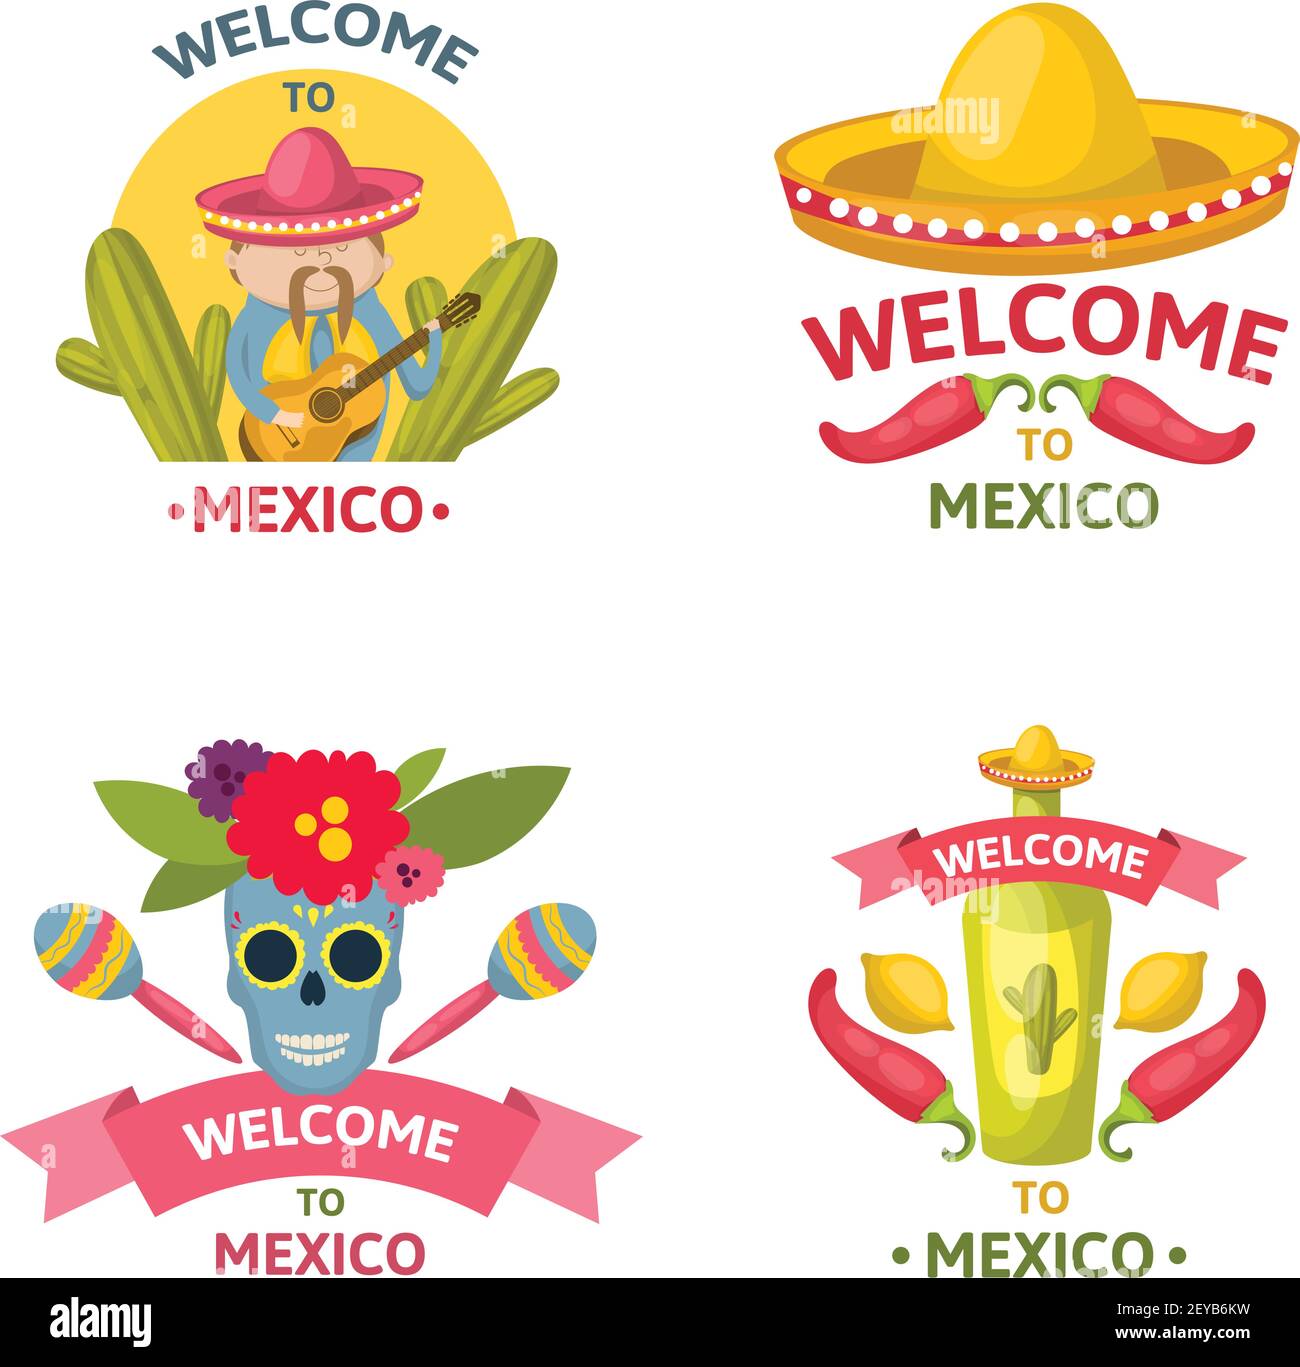 Emblema de bienvenida mexicano con descripciones de bienvenida a méxico aisladas y la ilustración vectorial de colores Ilustración del Vector